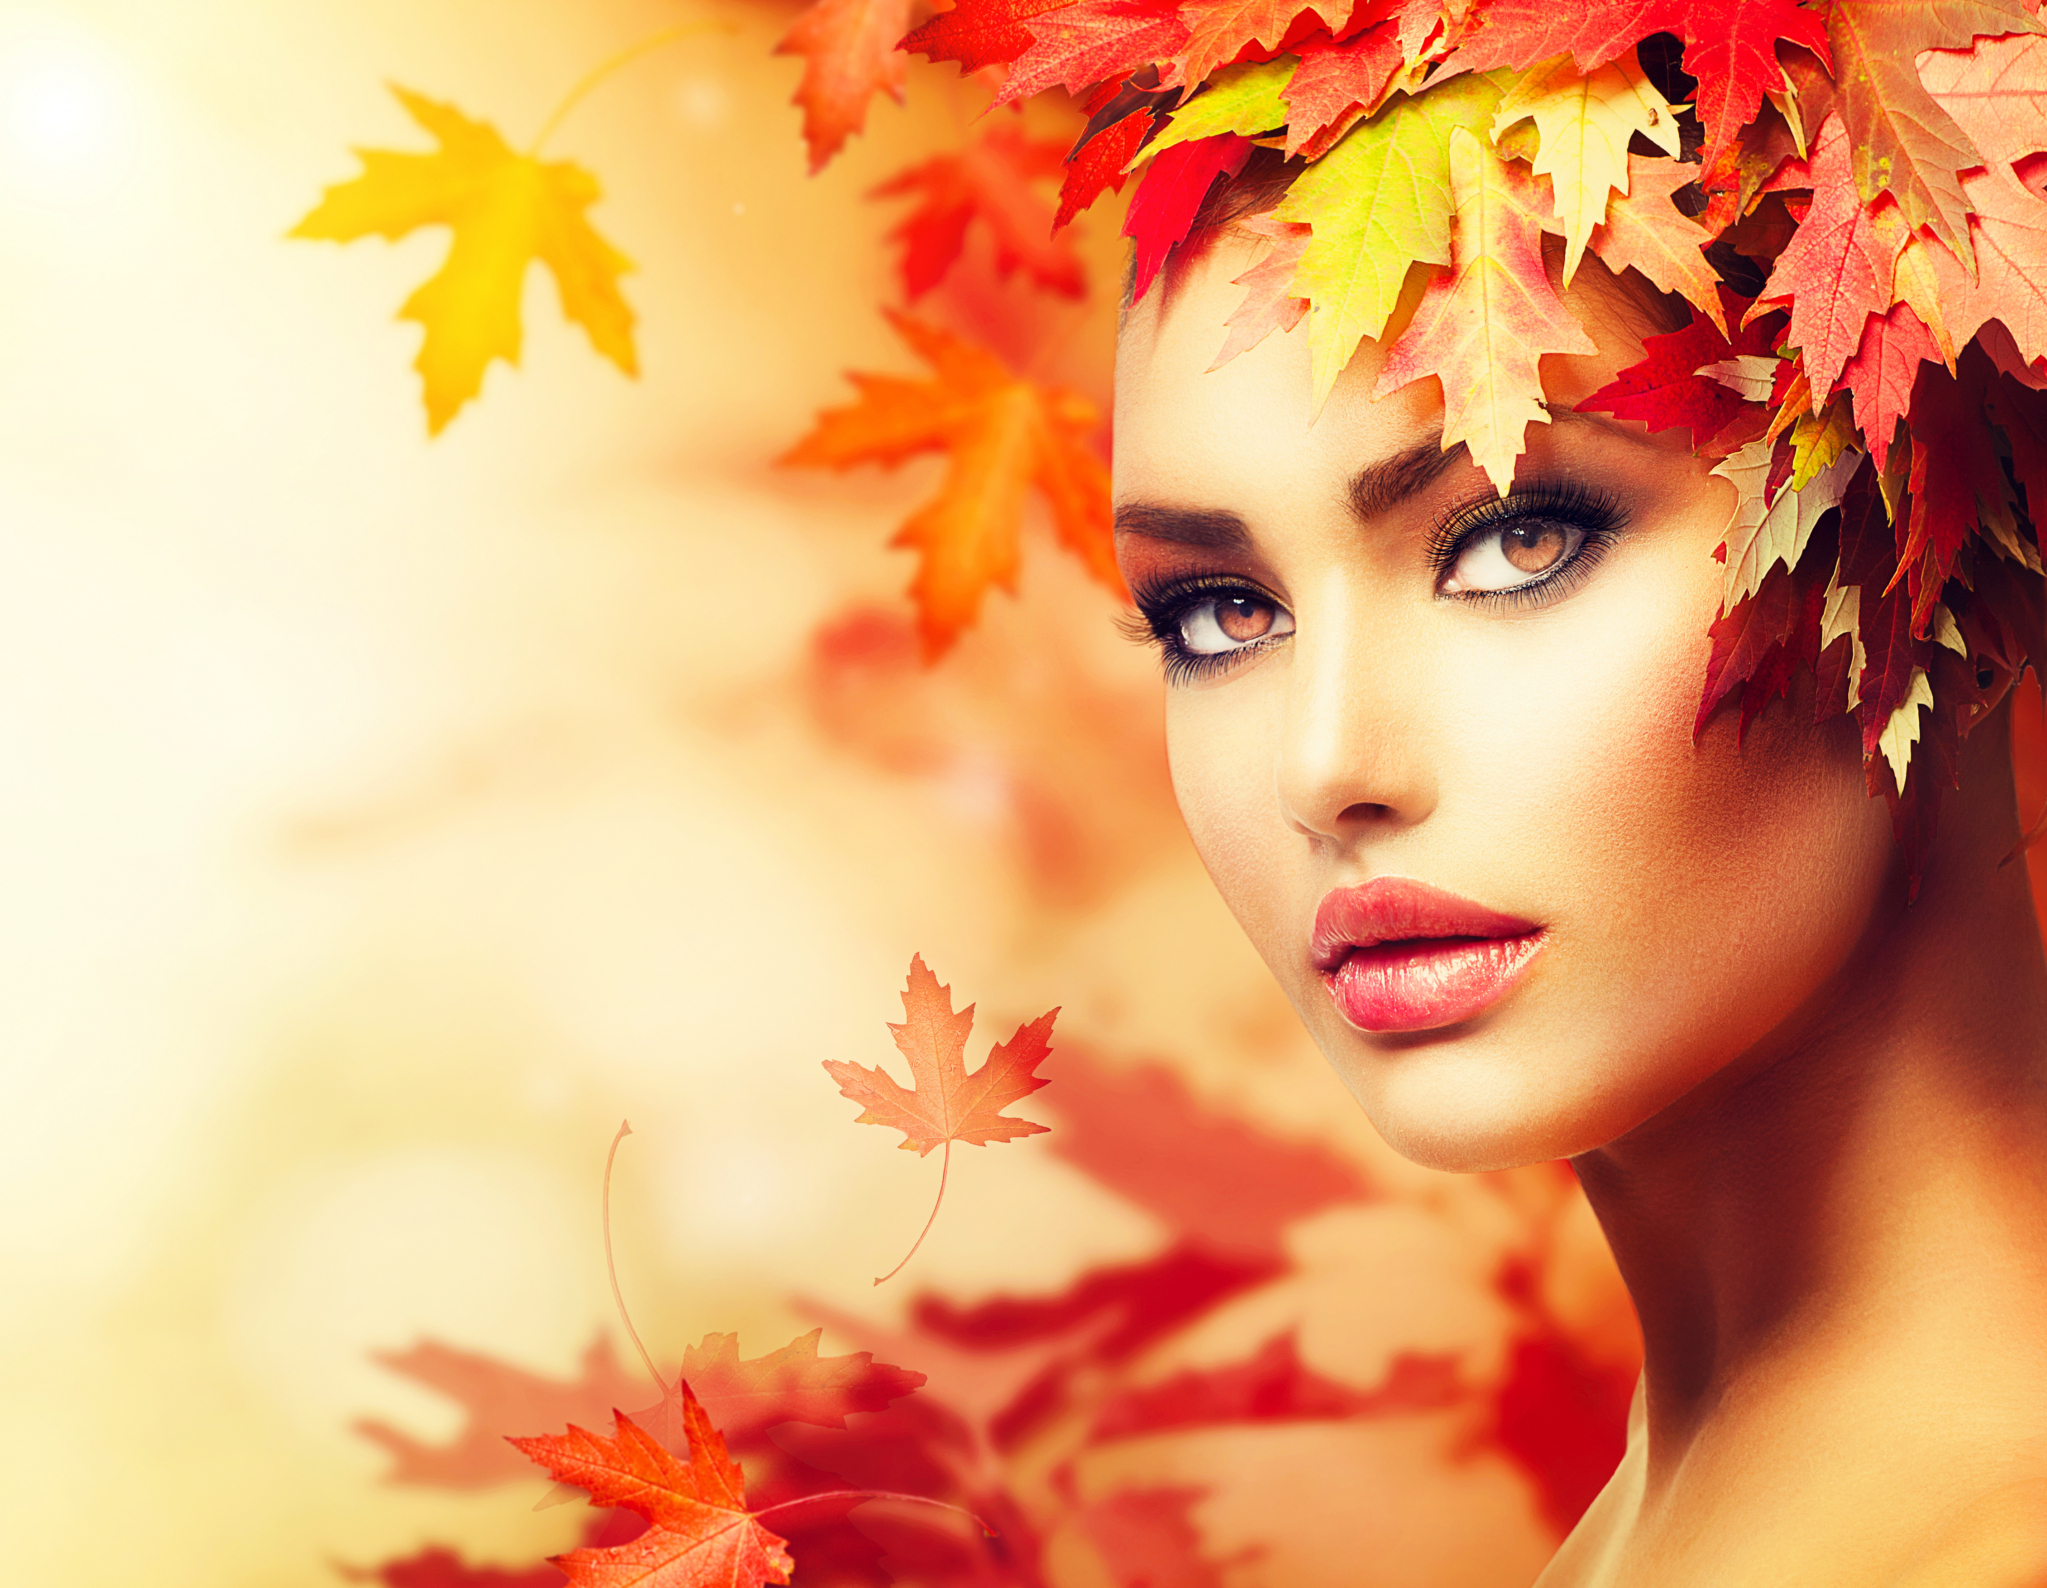 NAJNOVIJI TRENDOVI U ŠMINKANJU: Ove jeseni biće aktuelni ajlajner, rumenilo i raznobojne senke na očima!